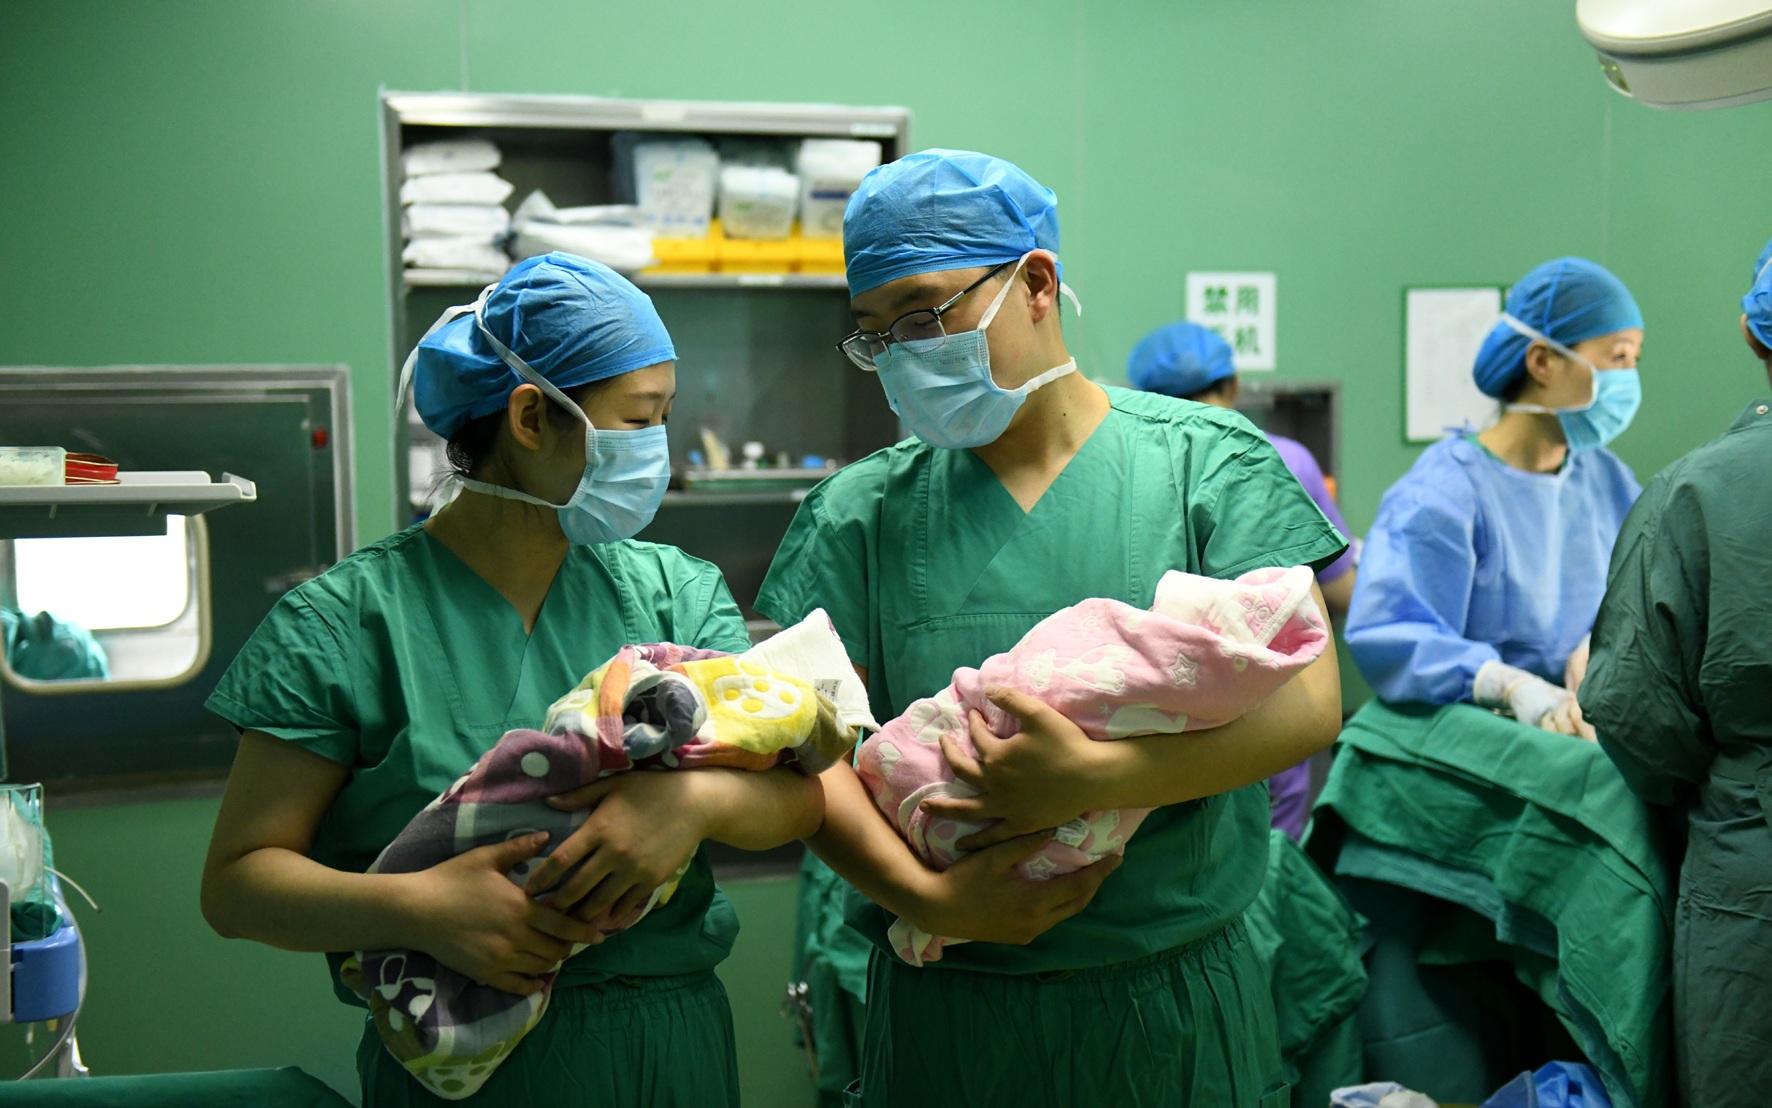 ▲资料图。河北省石家庄市妇产医院，护士抱着刚出生的双胞胎婴儿。图/新华社